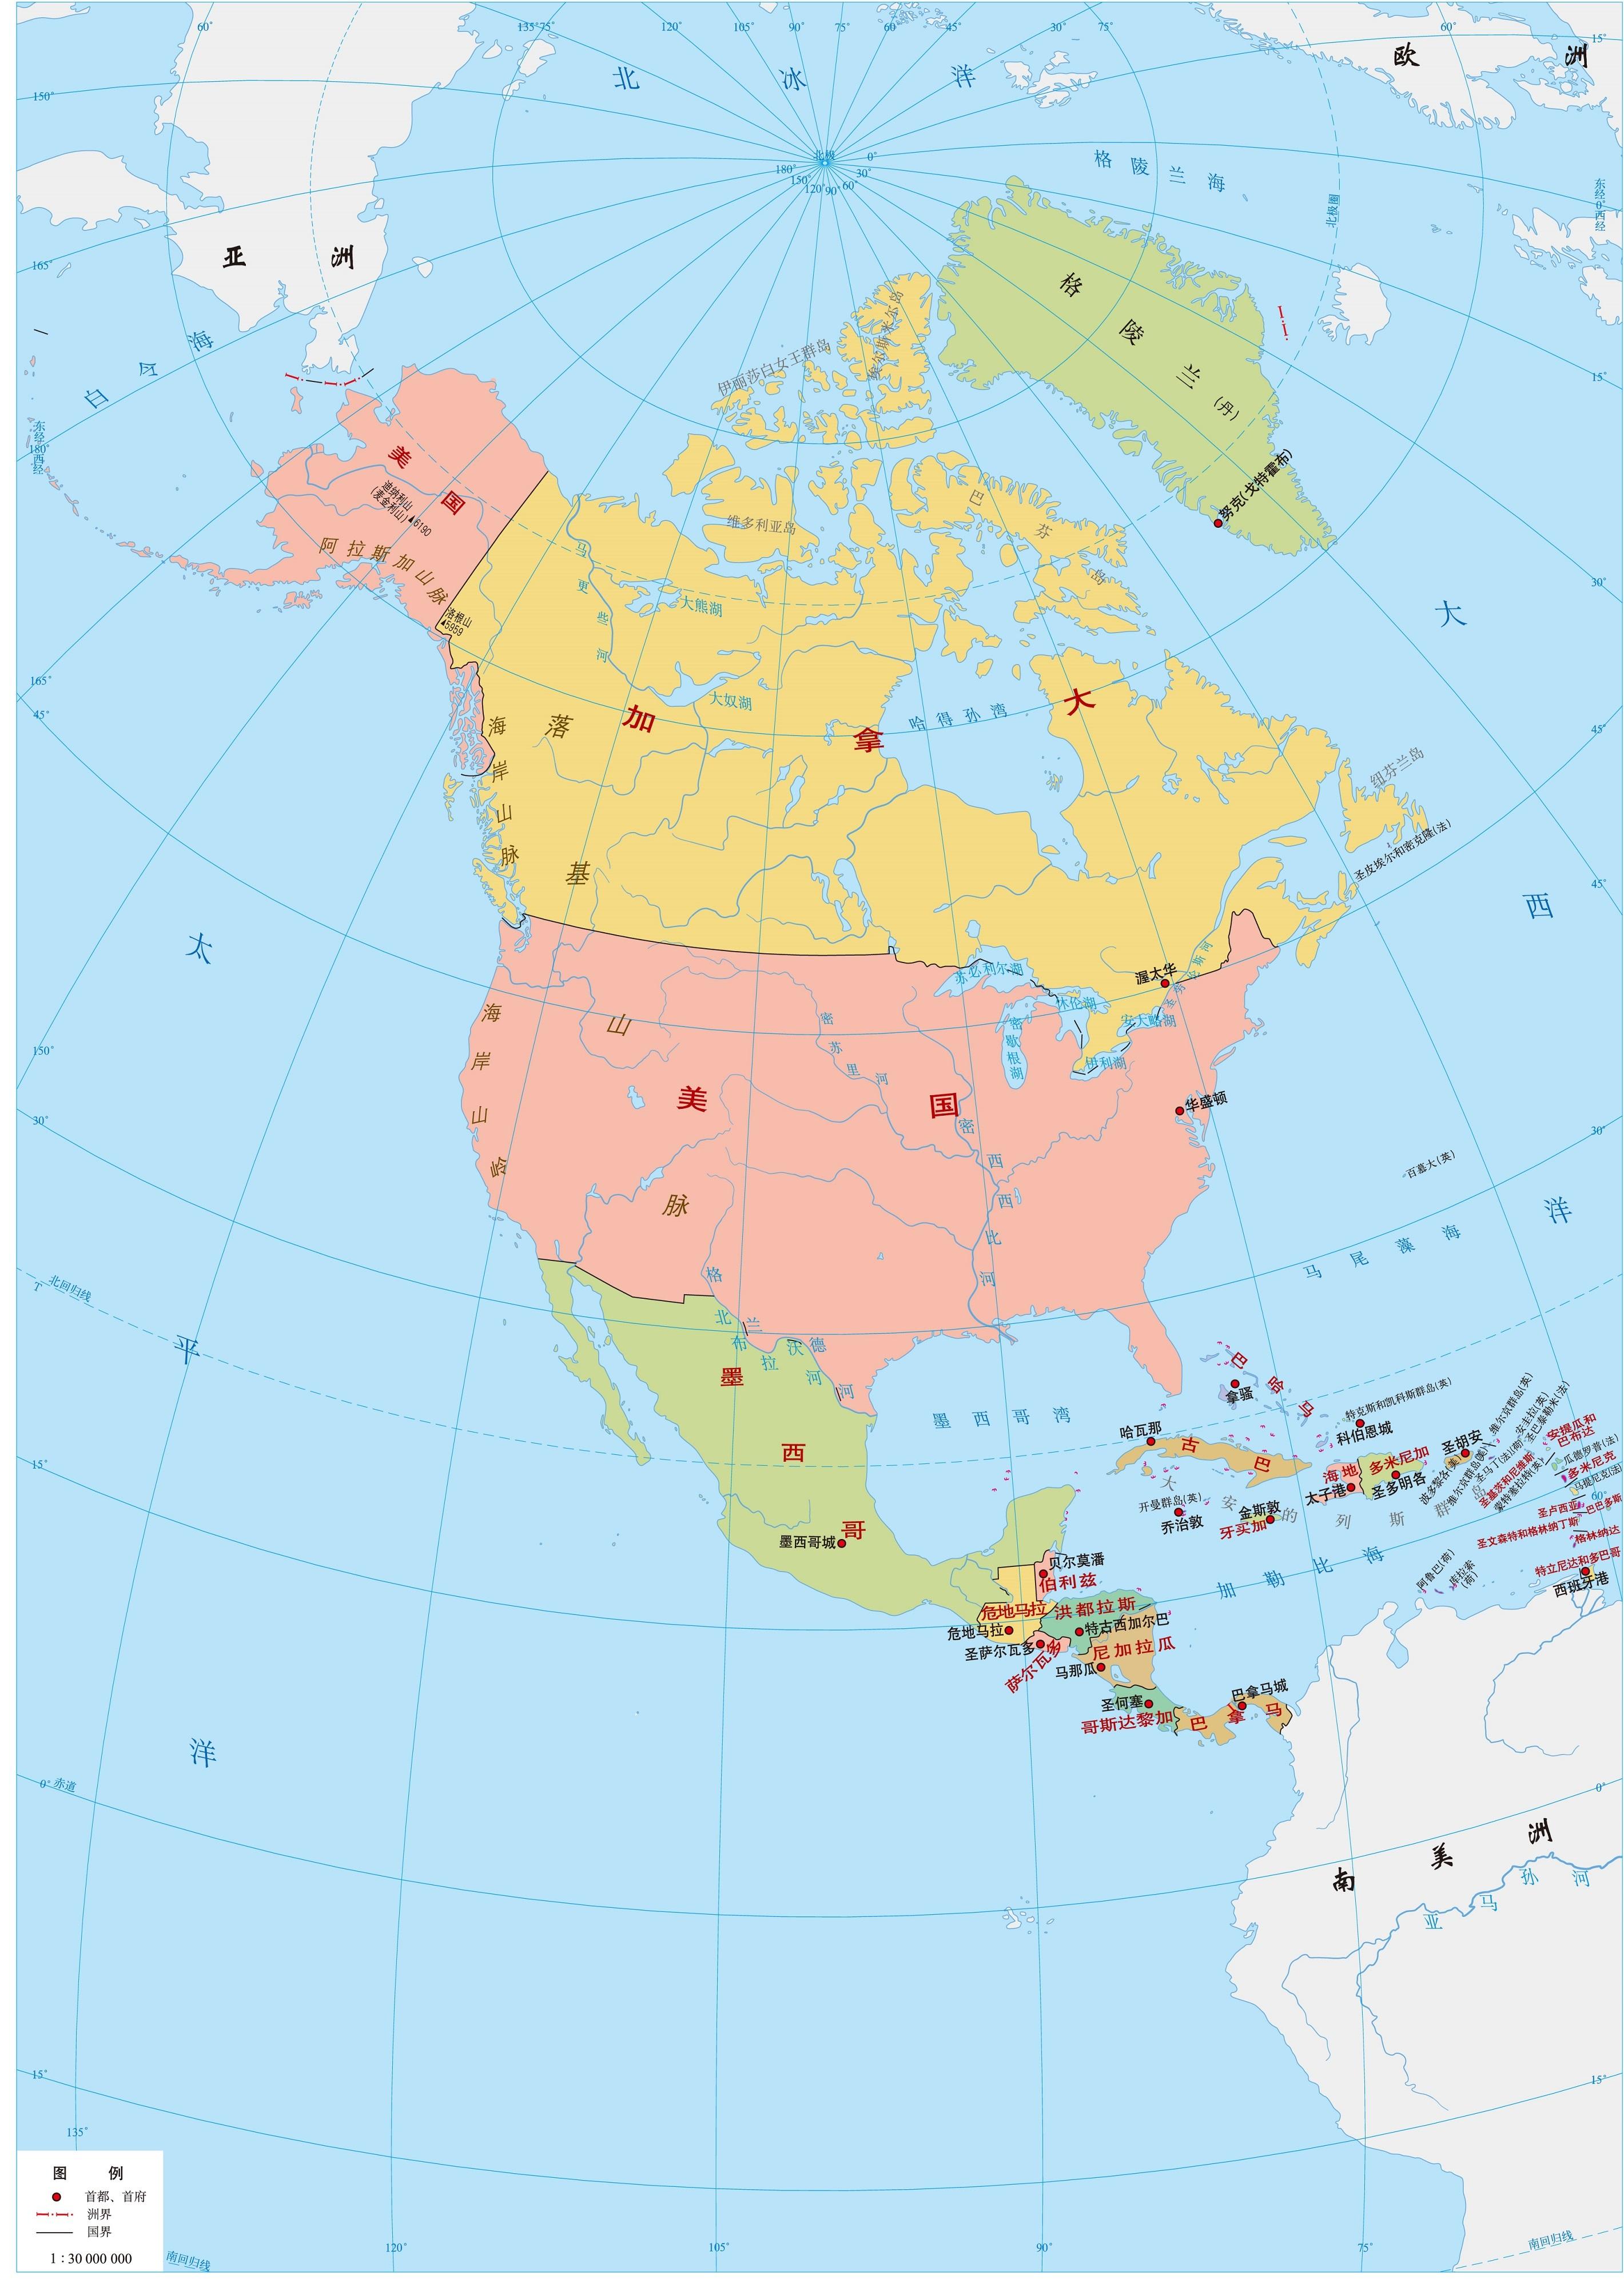 巴拿马运河是哪两个洲的分界线(七大洲和四大洋地图分界线)